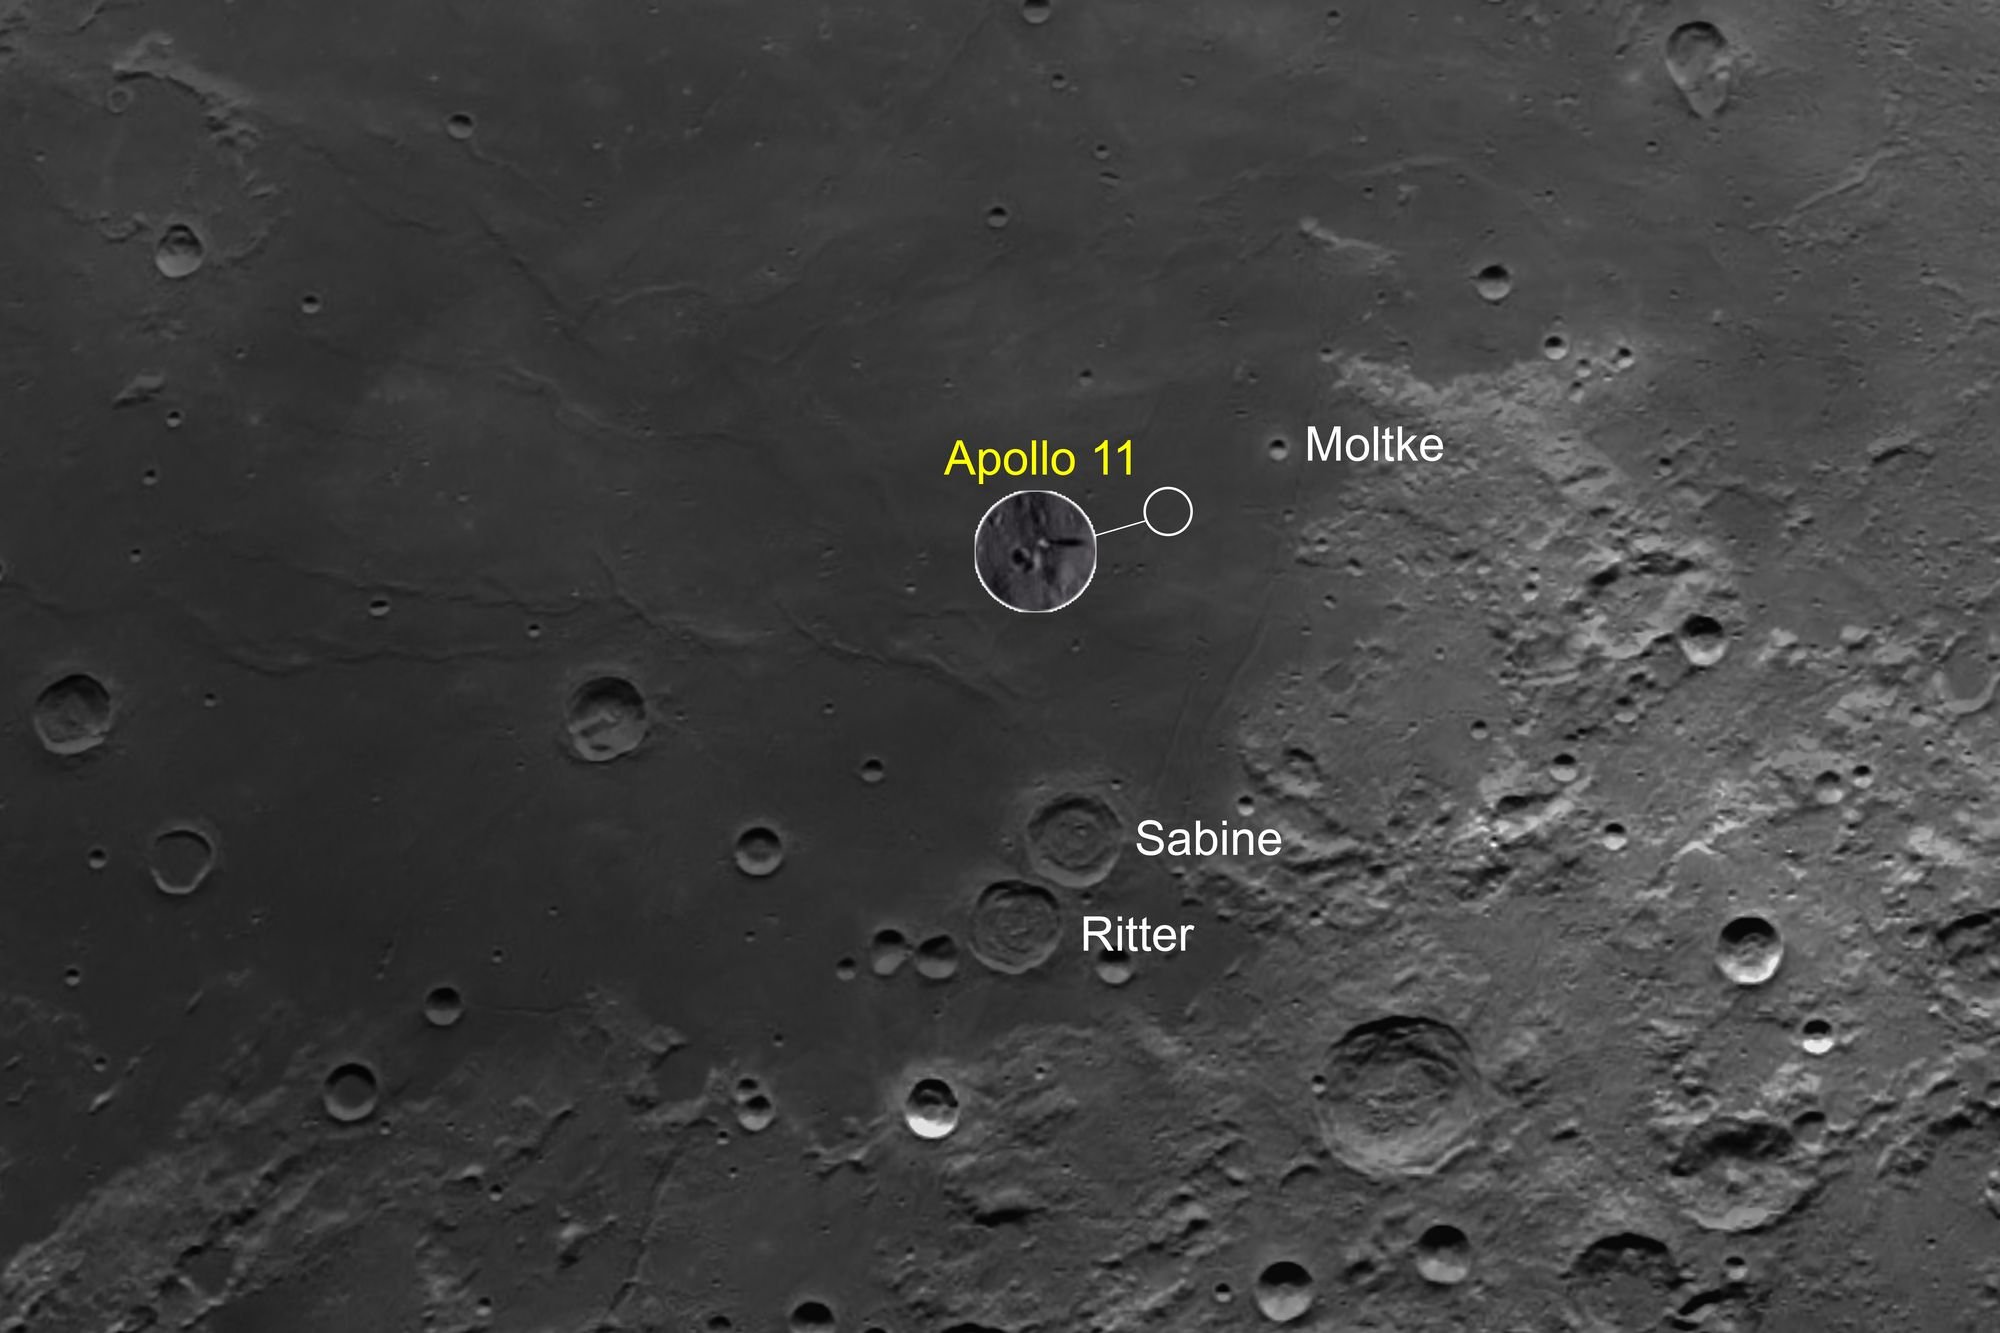 ถ่ายภาพดวงจันทร์กับบริเวณลงจอดของยานอวกาศ Apollo 11 